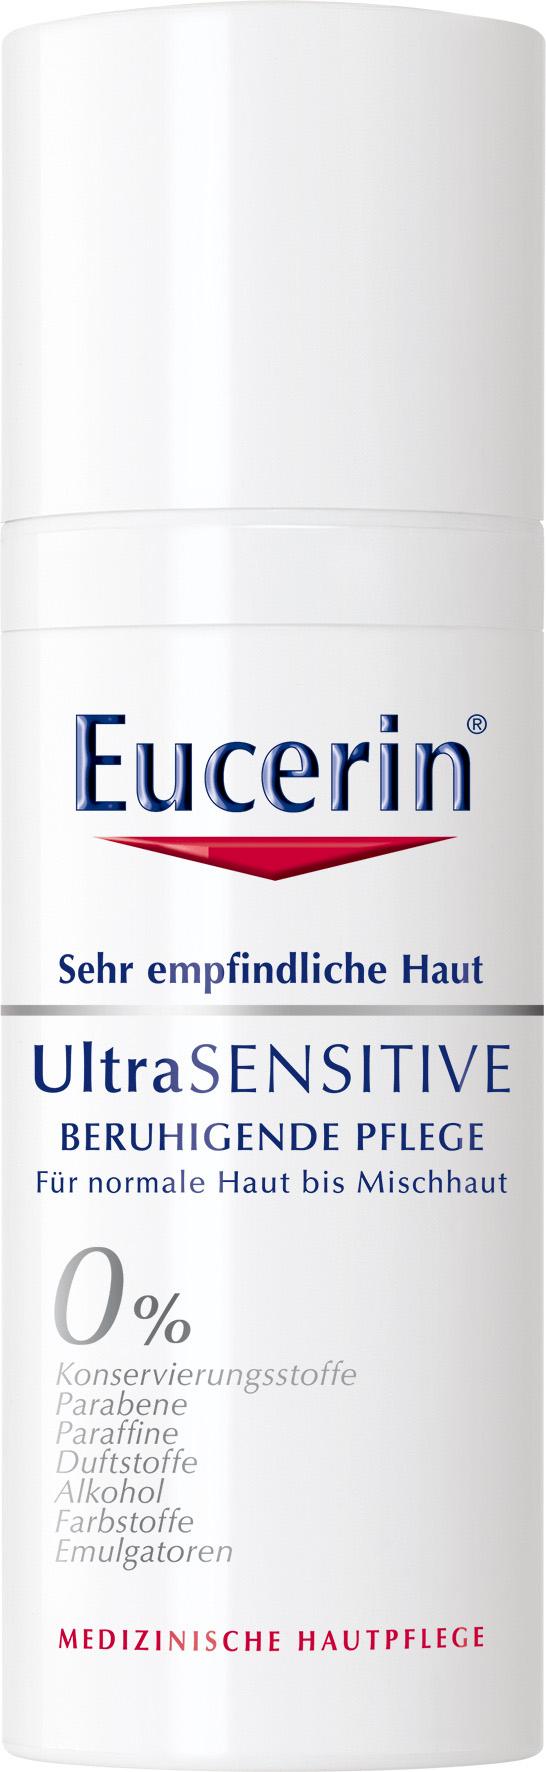 Eucerin UltraSENSITIVE BERUHIGENDE PFLEGE Für normale Haut bis Mischhaut 50ml, UVP 16,90, PZN 10268689 Die Formel mindert unangenehme Hautgefühle wie Stechen, Brennen und Jucken, stärkt die